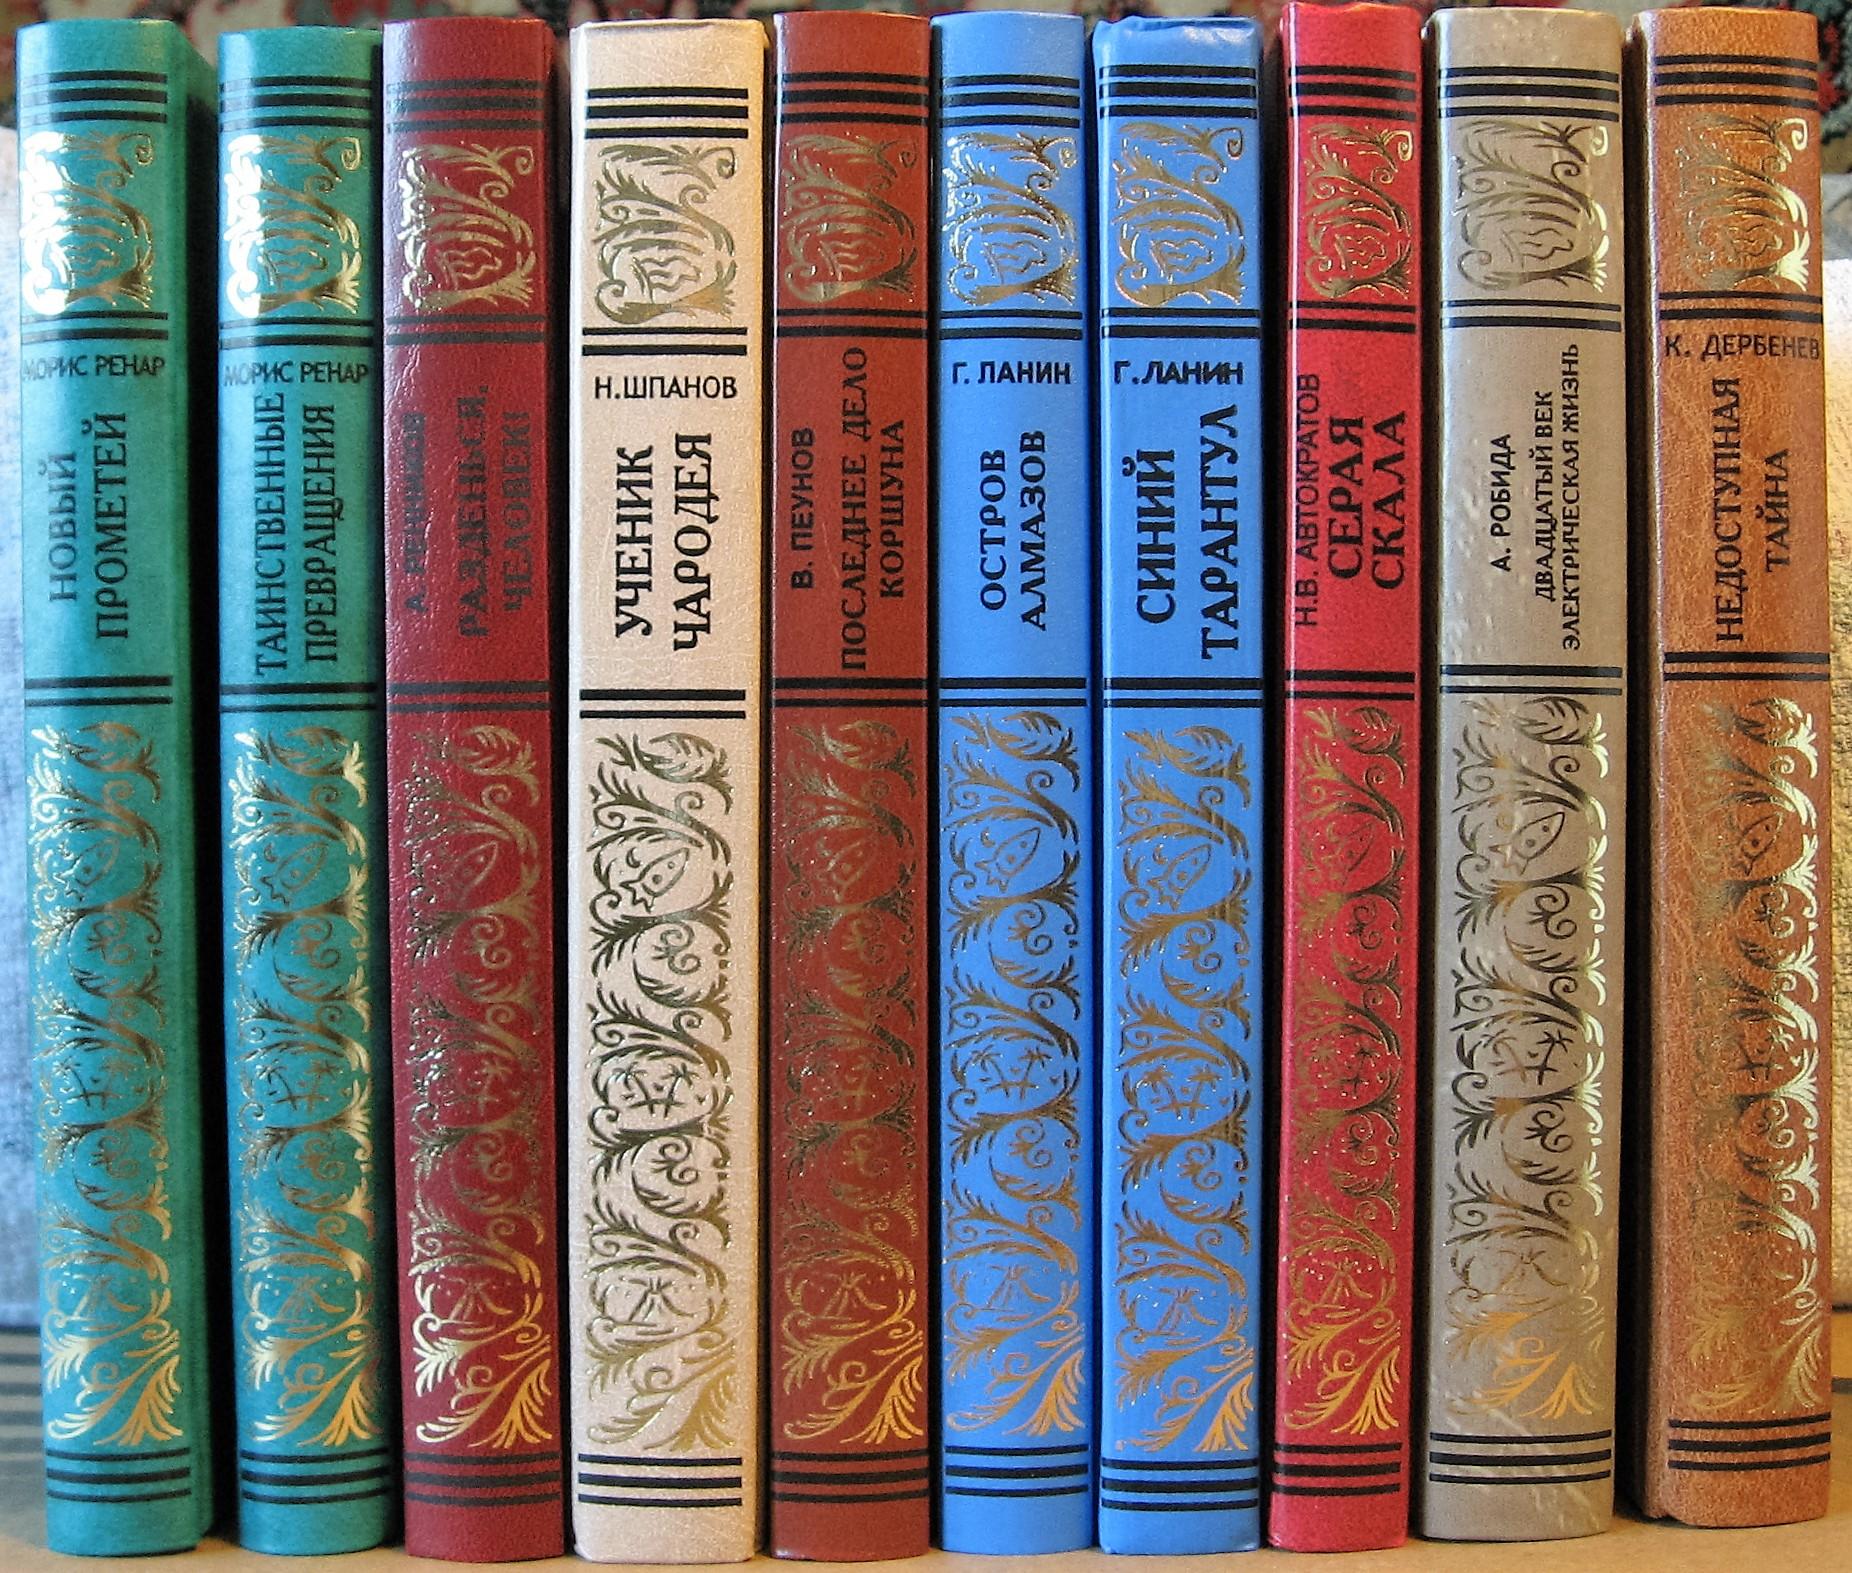 Библиотека приключений в 20 томах 1955-1959